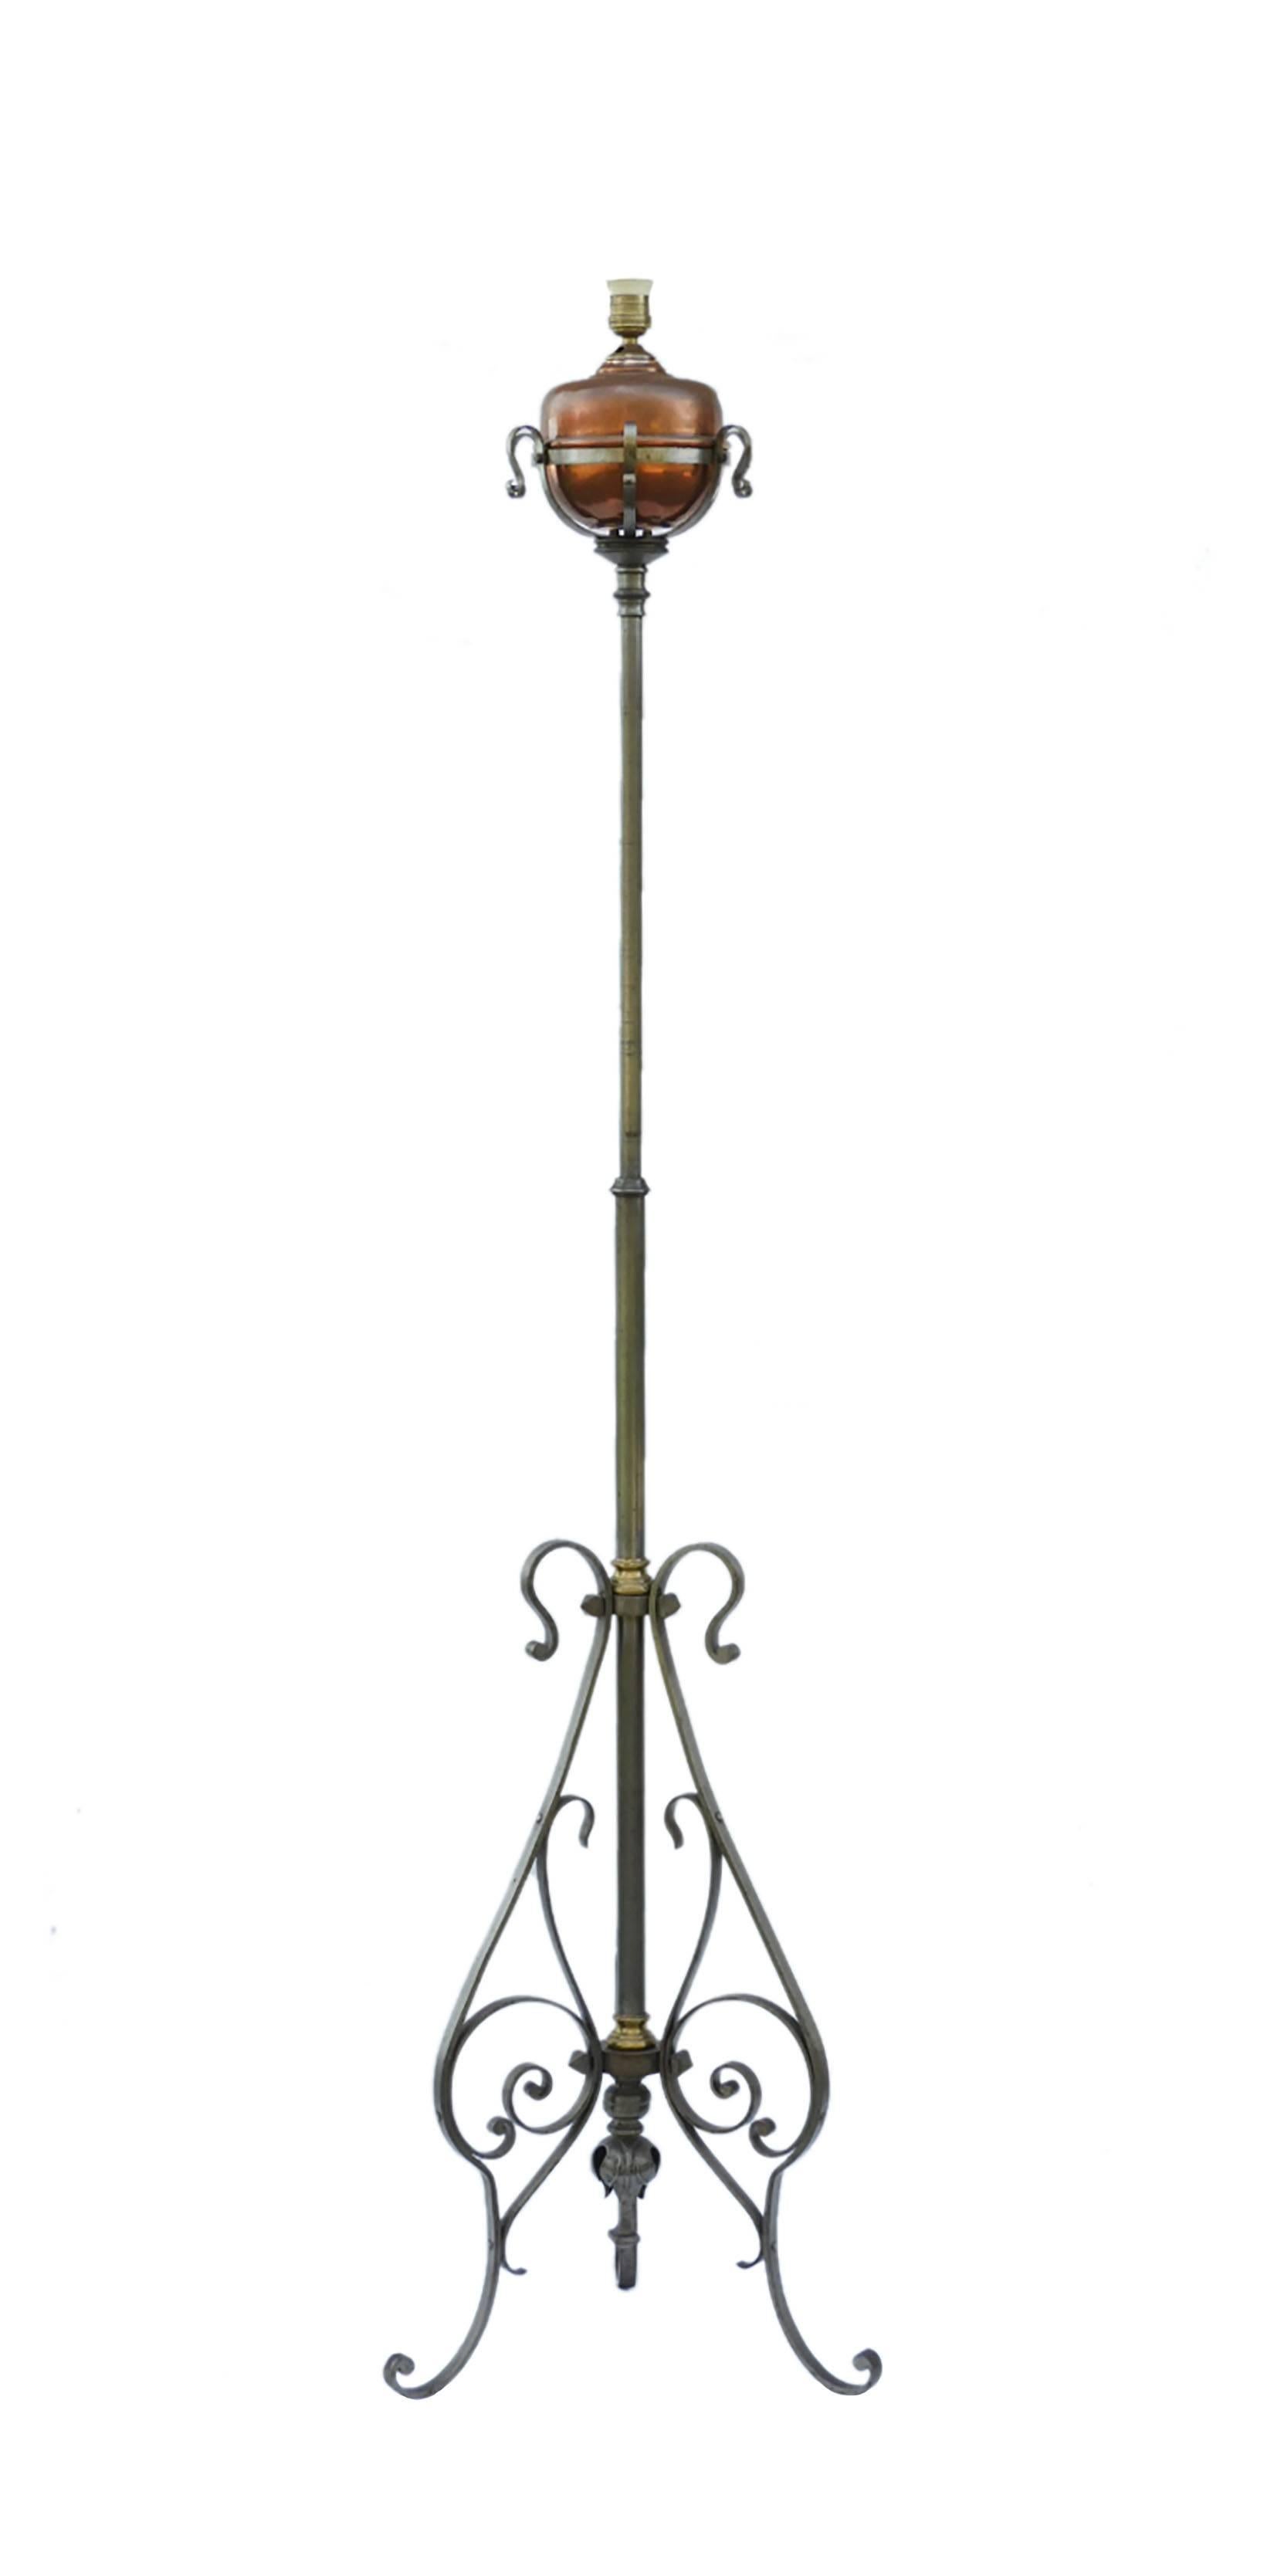 Forgé Lampadaire Arts & Crafts standard à lumière télescopique réglable en fer cuivré, vers 1910